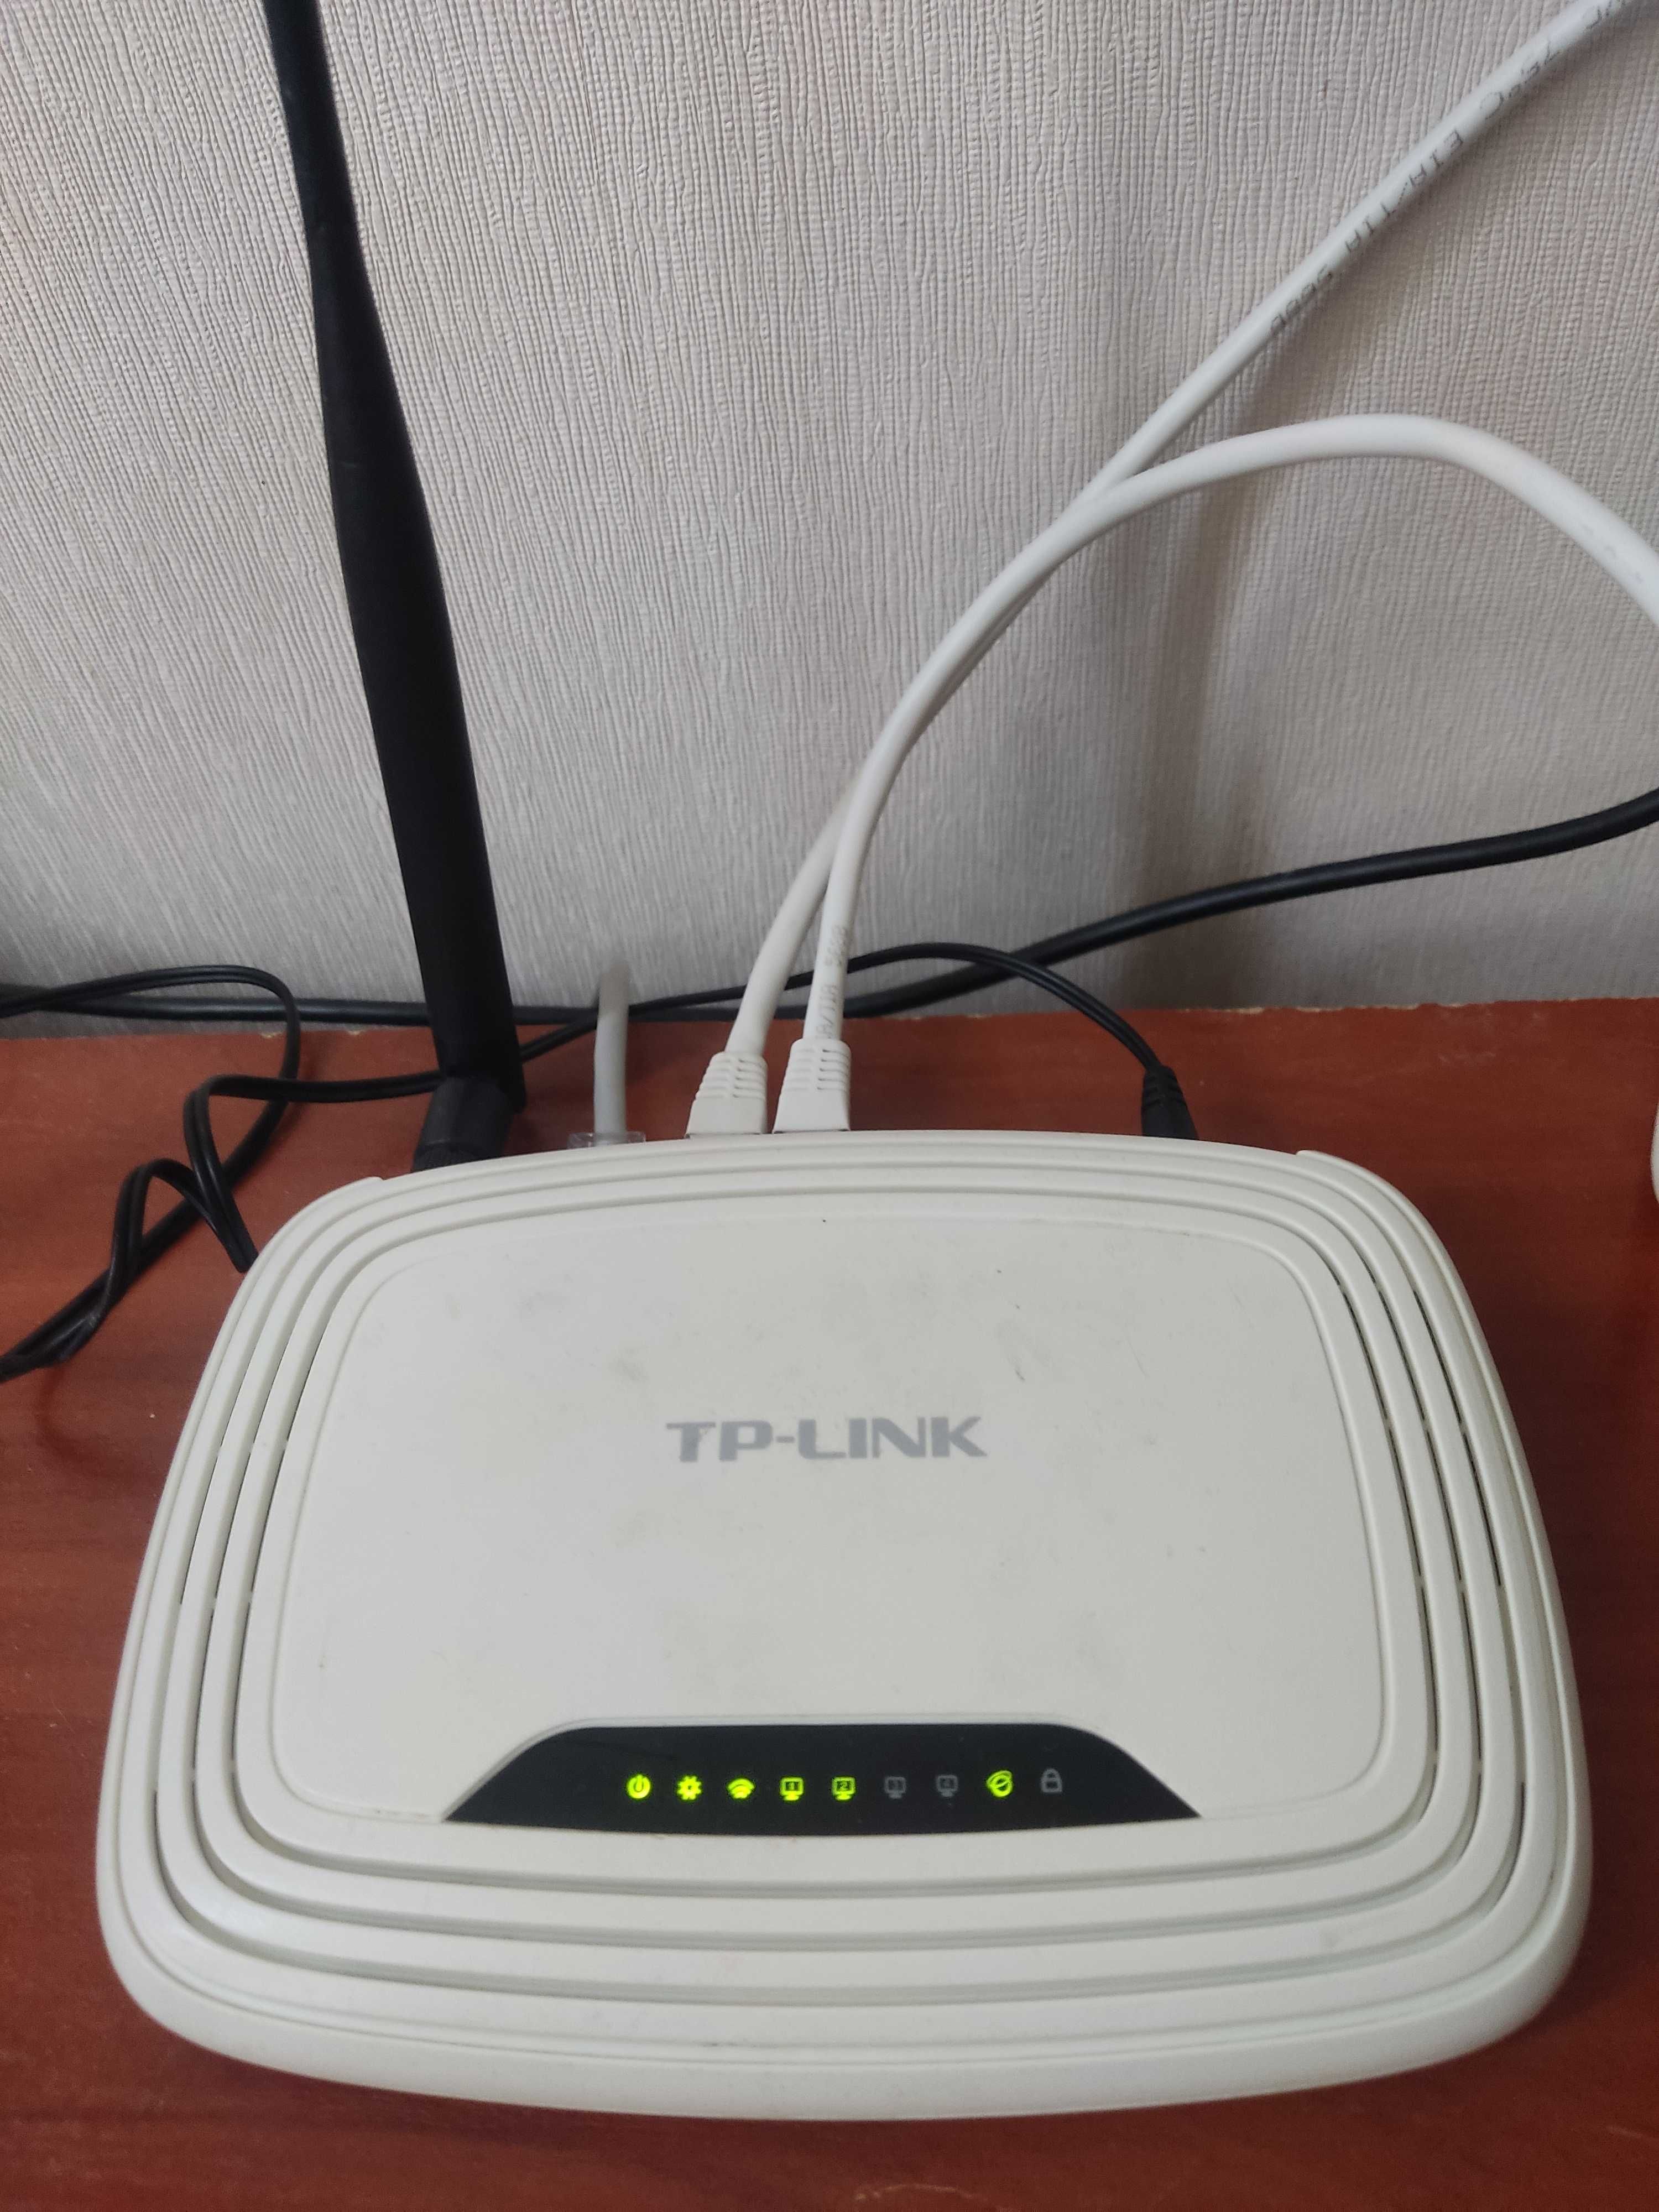 Продам б/у WiFi роутер TP-Link TL-WR 740N и блок питания